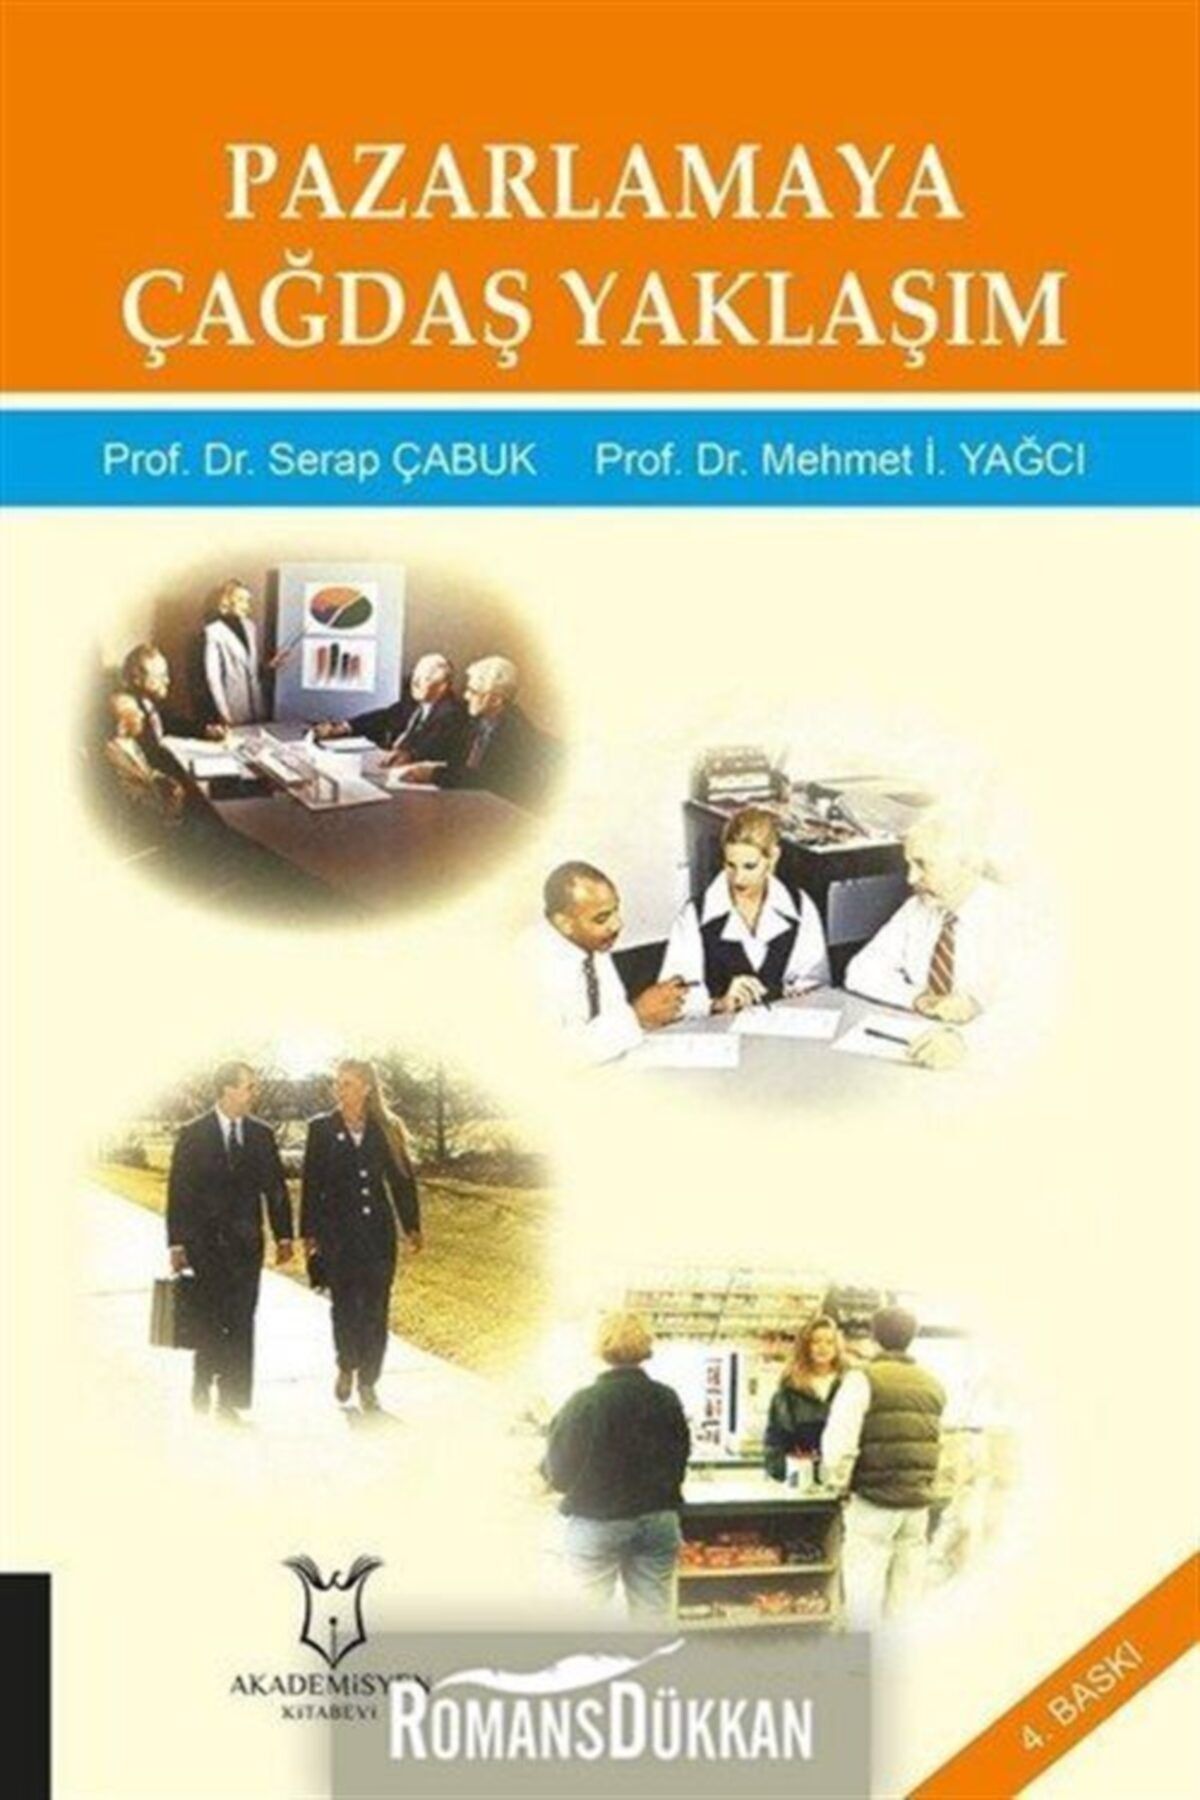 Akademisyen Kitabevi Pazarlamaya Çağdaş Yaklaşım - Mehmet I. Yağcı,serap Çabuk